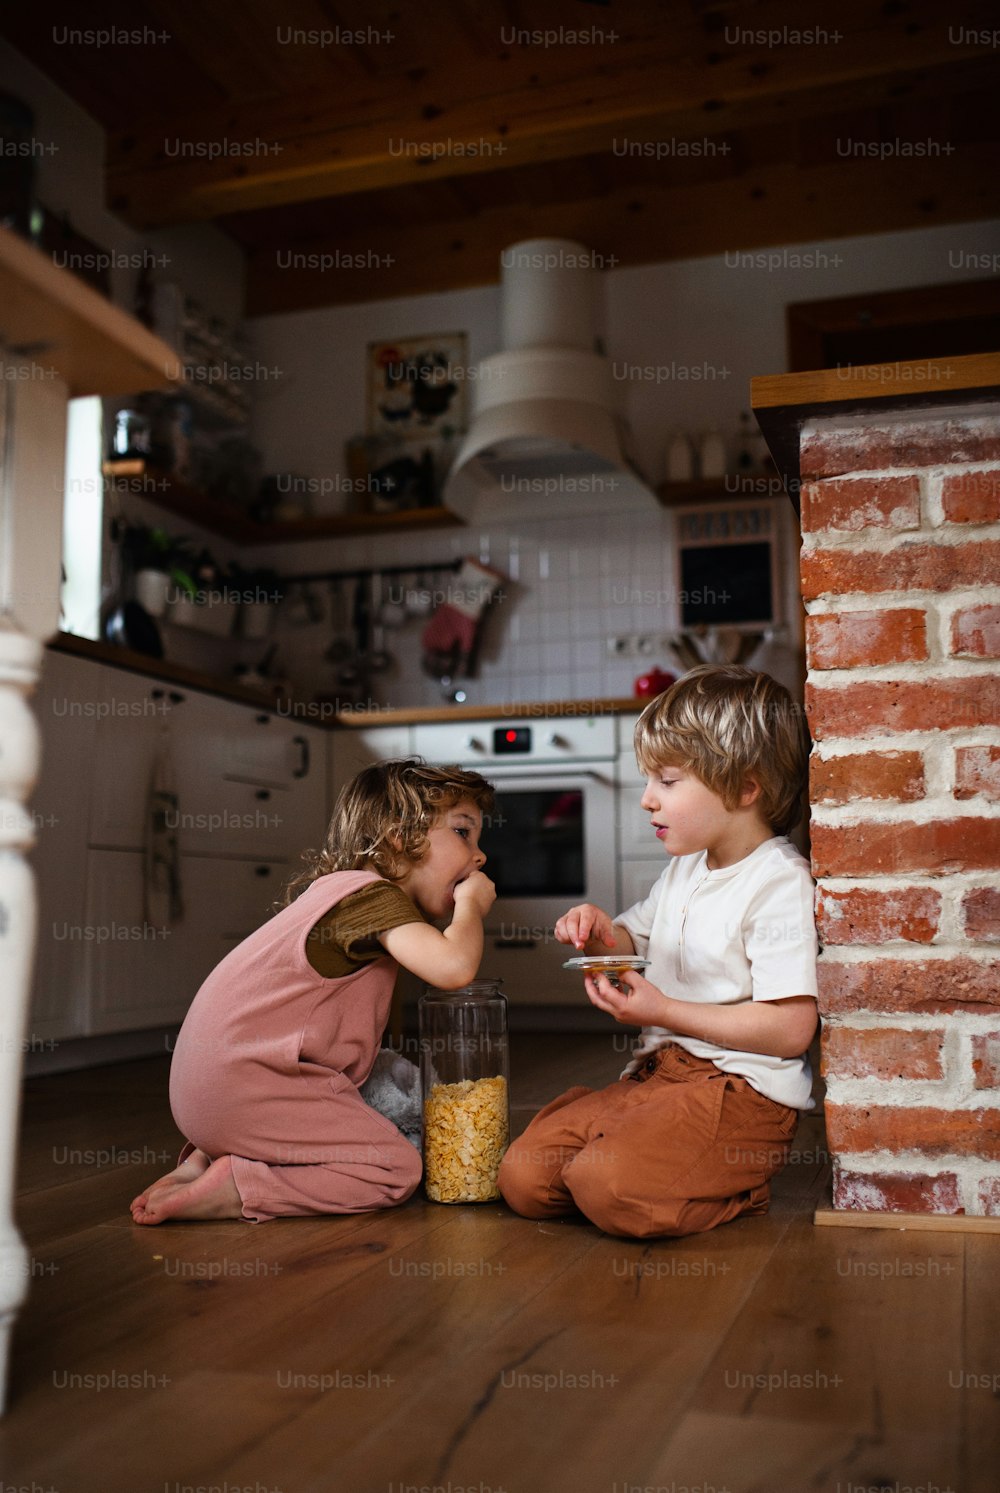 집에서 실내에서 콘플레이크를 먹는 행복한 두 아이.